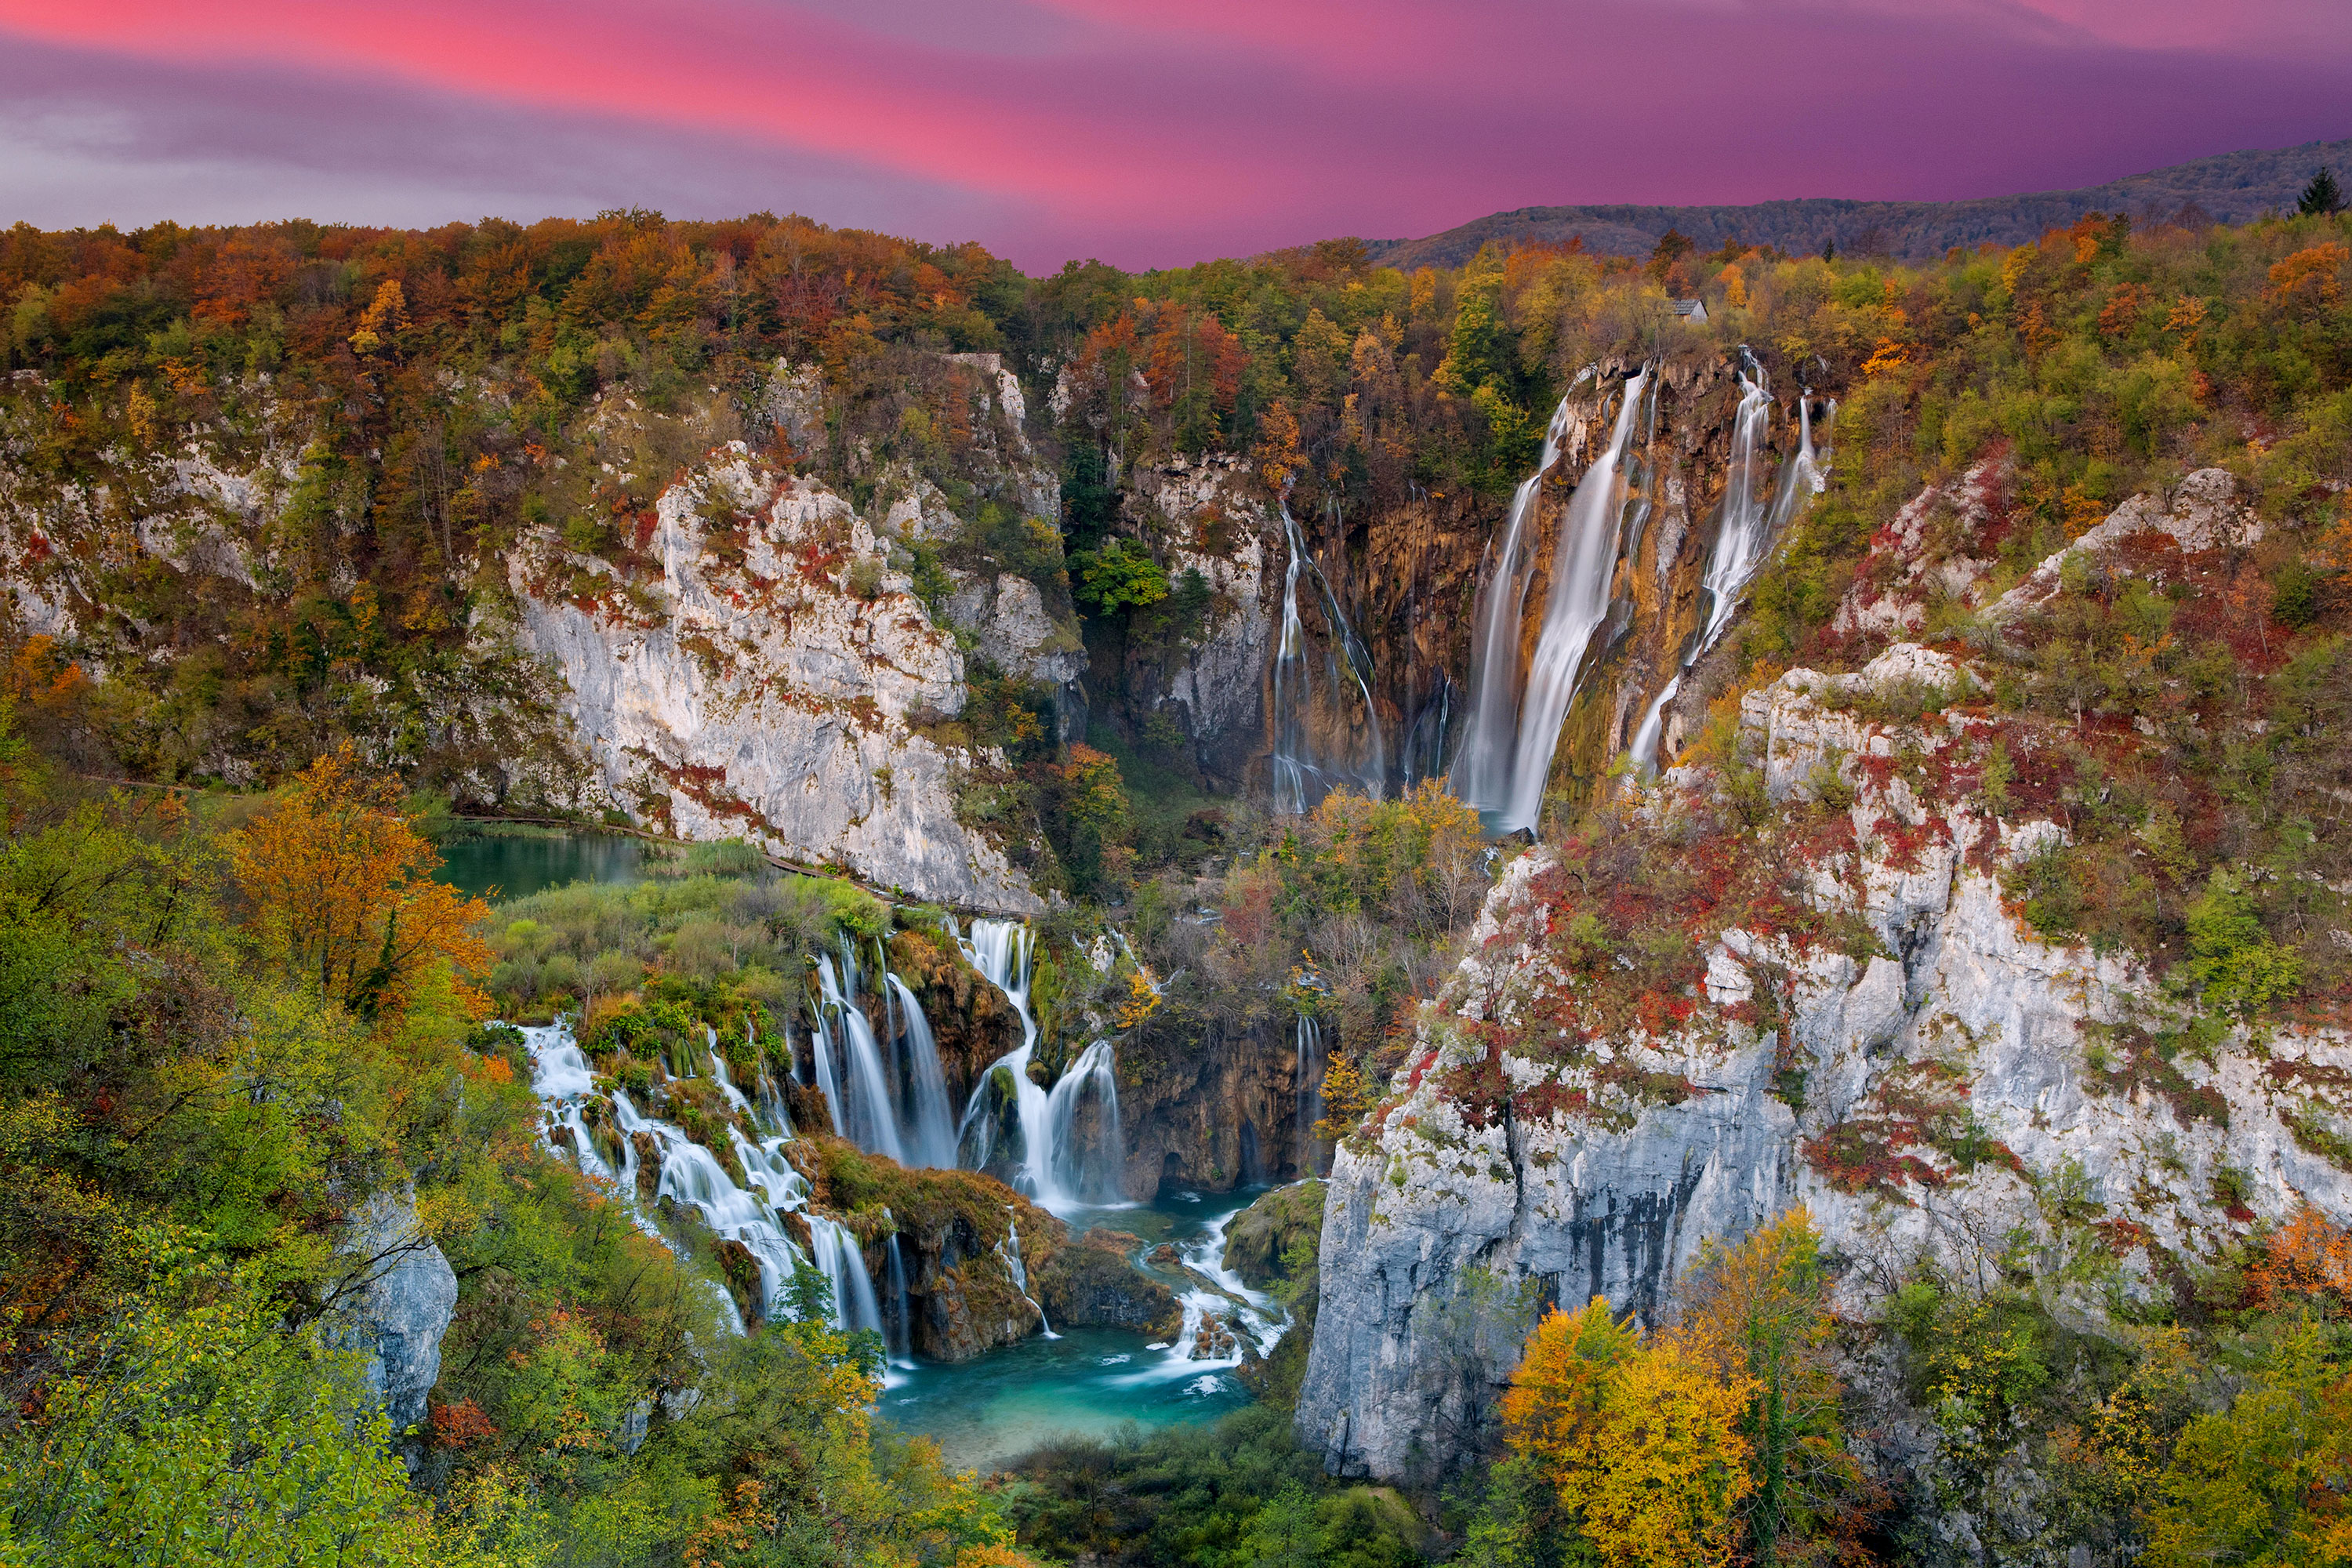 Top 5 Places in Croatia (Beyond Dubrovnik)